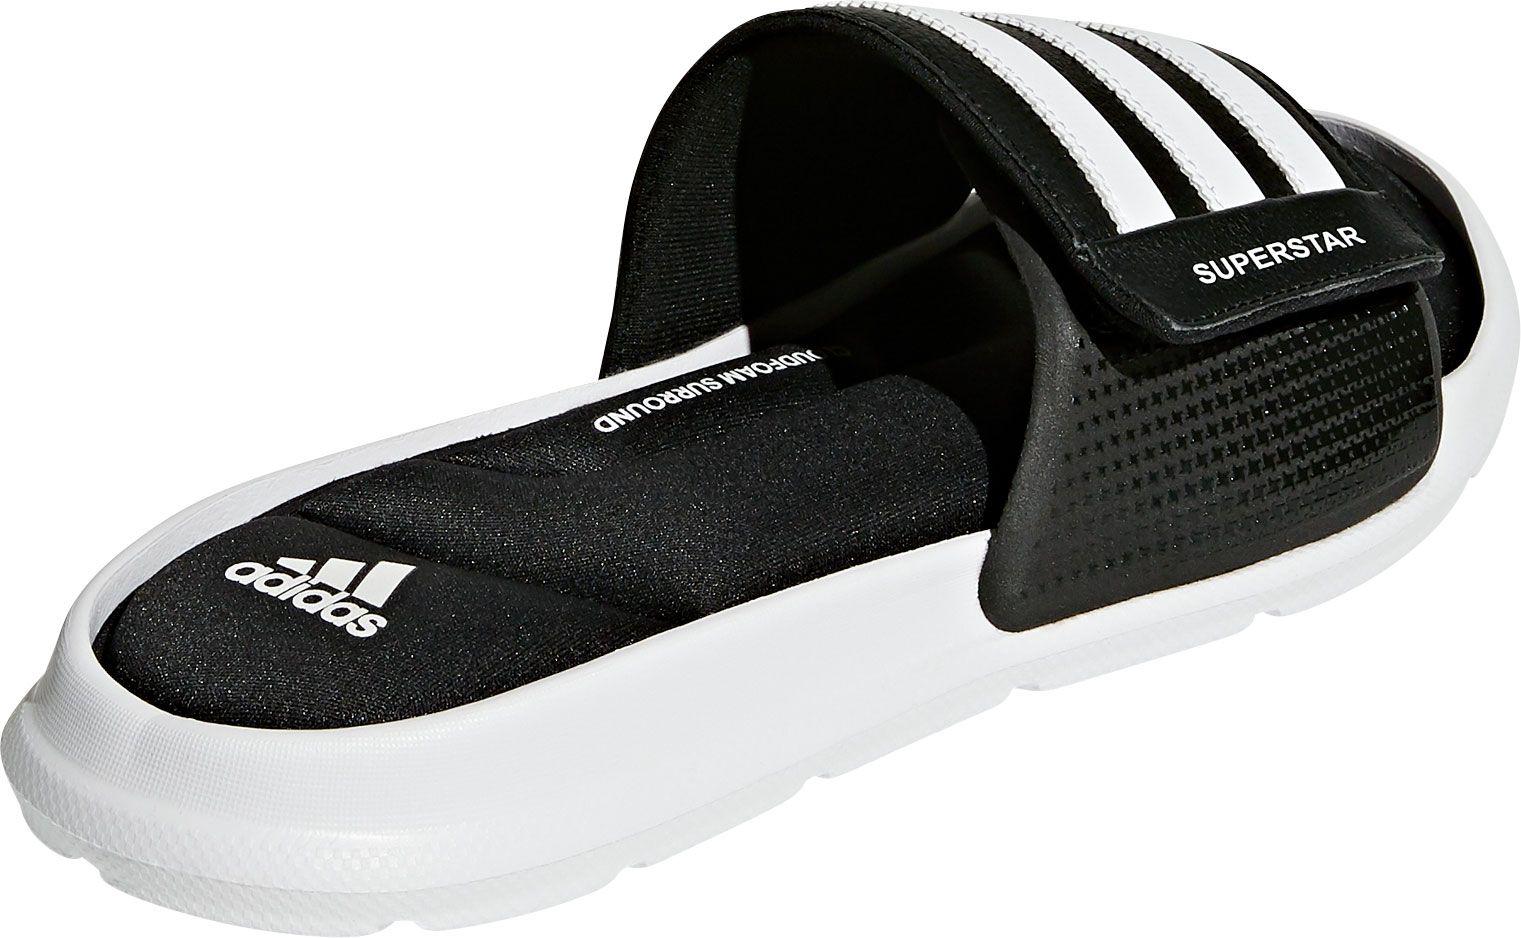 adidas Superstar 5g Adjustable Slides in Black/White (Black) for Men - Lyst